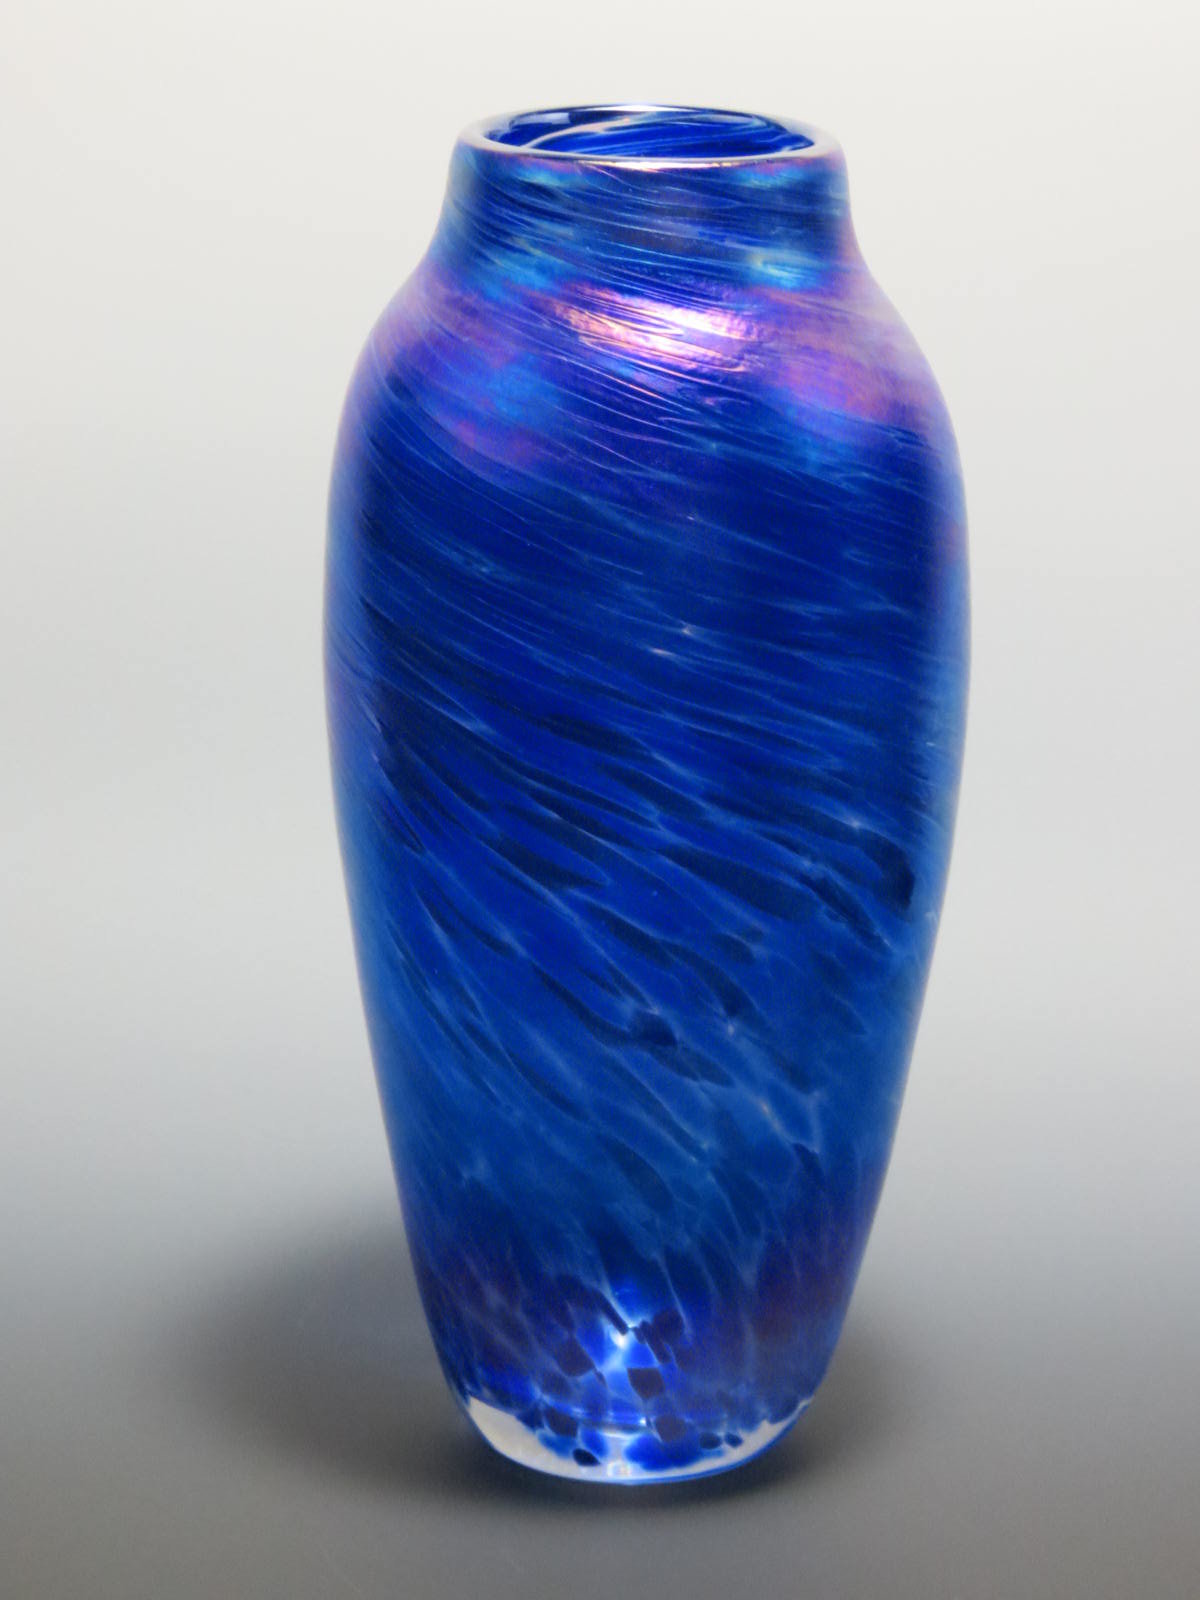 Blue Spun Vase by Mark Rosenbaum (Art Glass Vase) | Artful Home